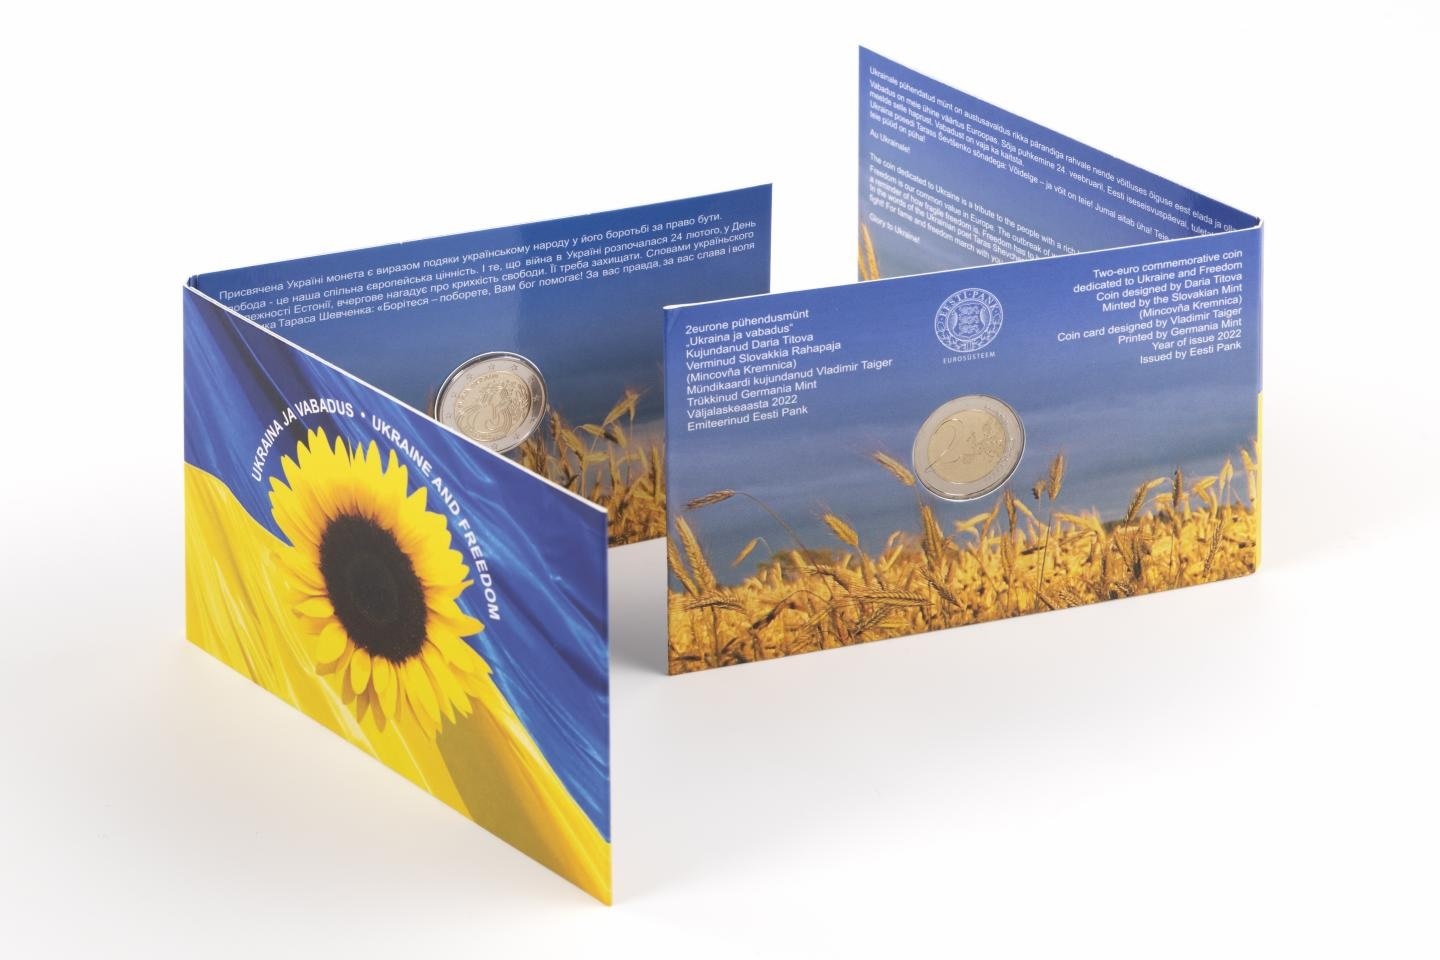 (EUR20.BU.2022.540189) 2 euro Estonia 2022 BU - Peace in Ukraine (packaging) (zoom)